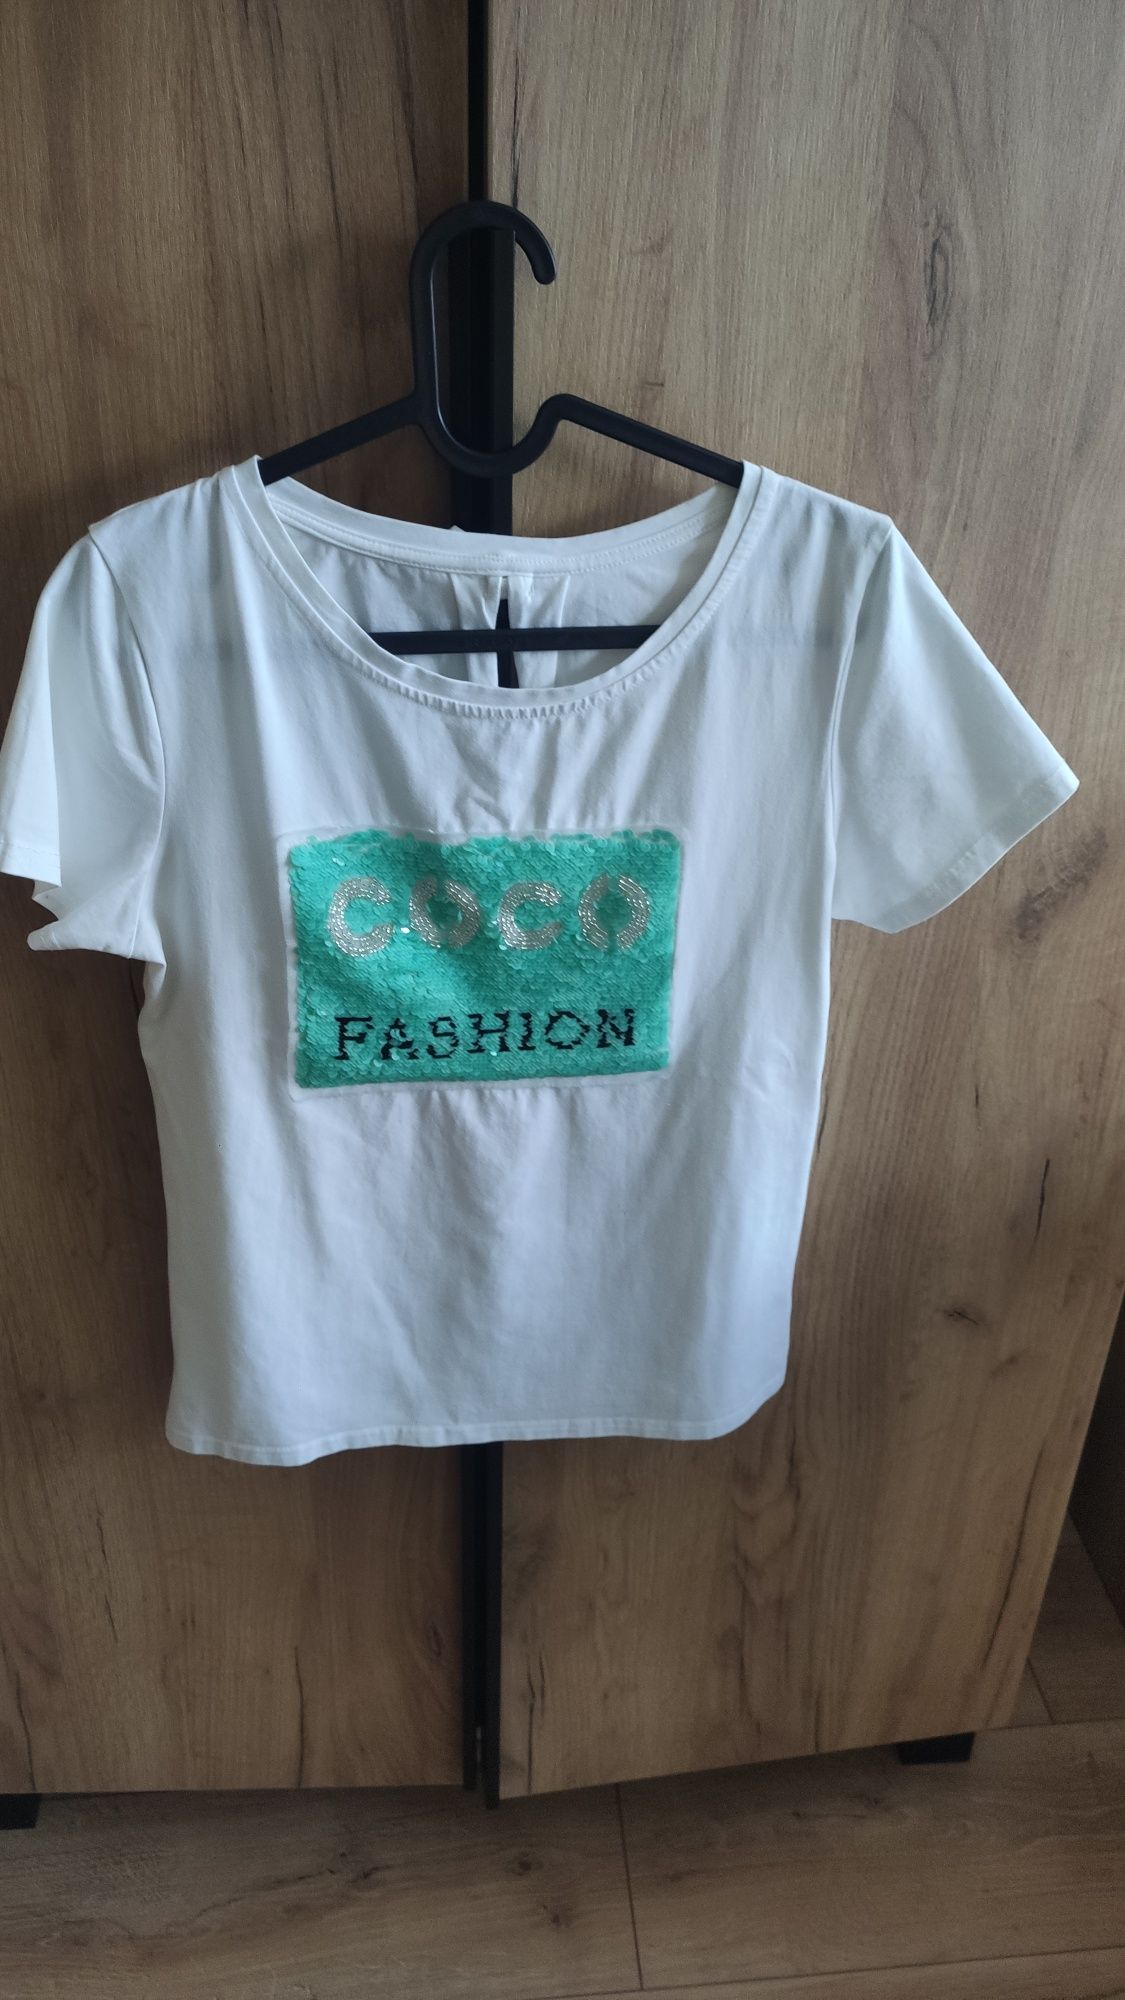 T-shirt bluzka krótki rękaw napis Coco biała rozmiar S-M